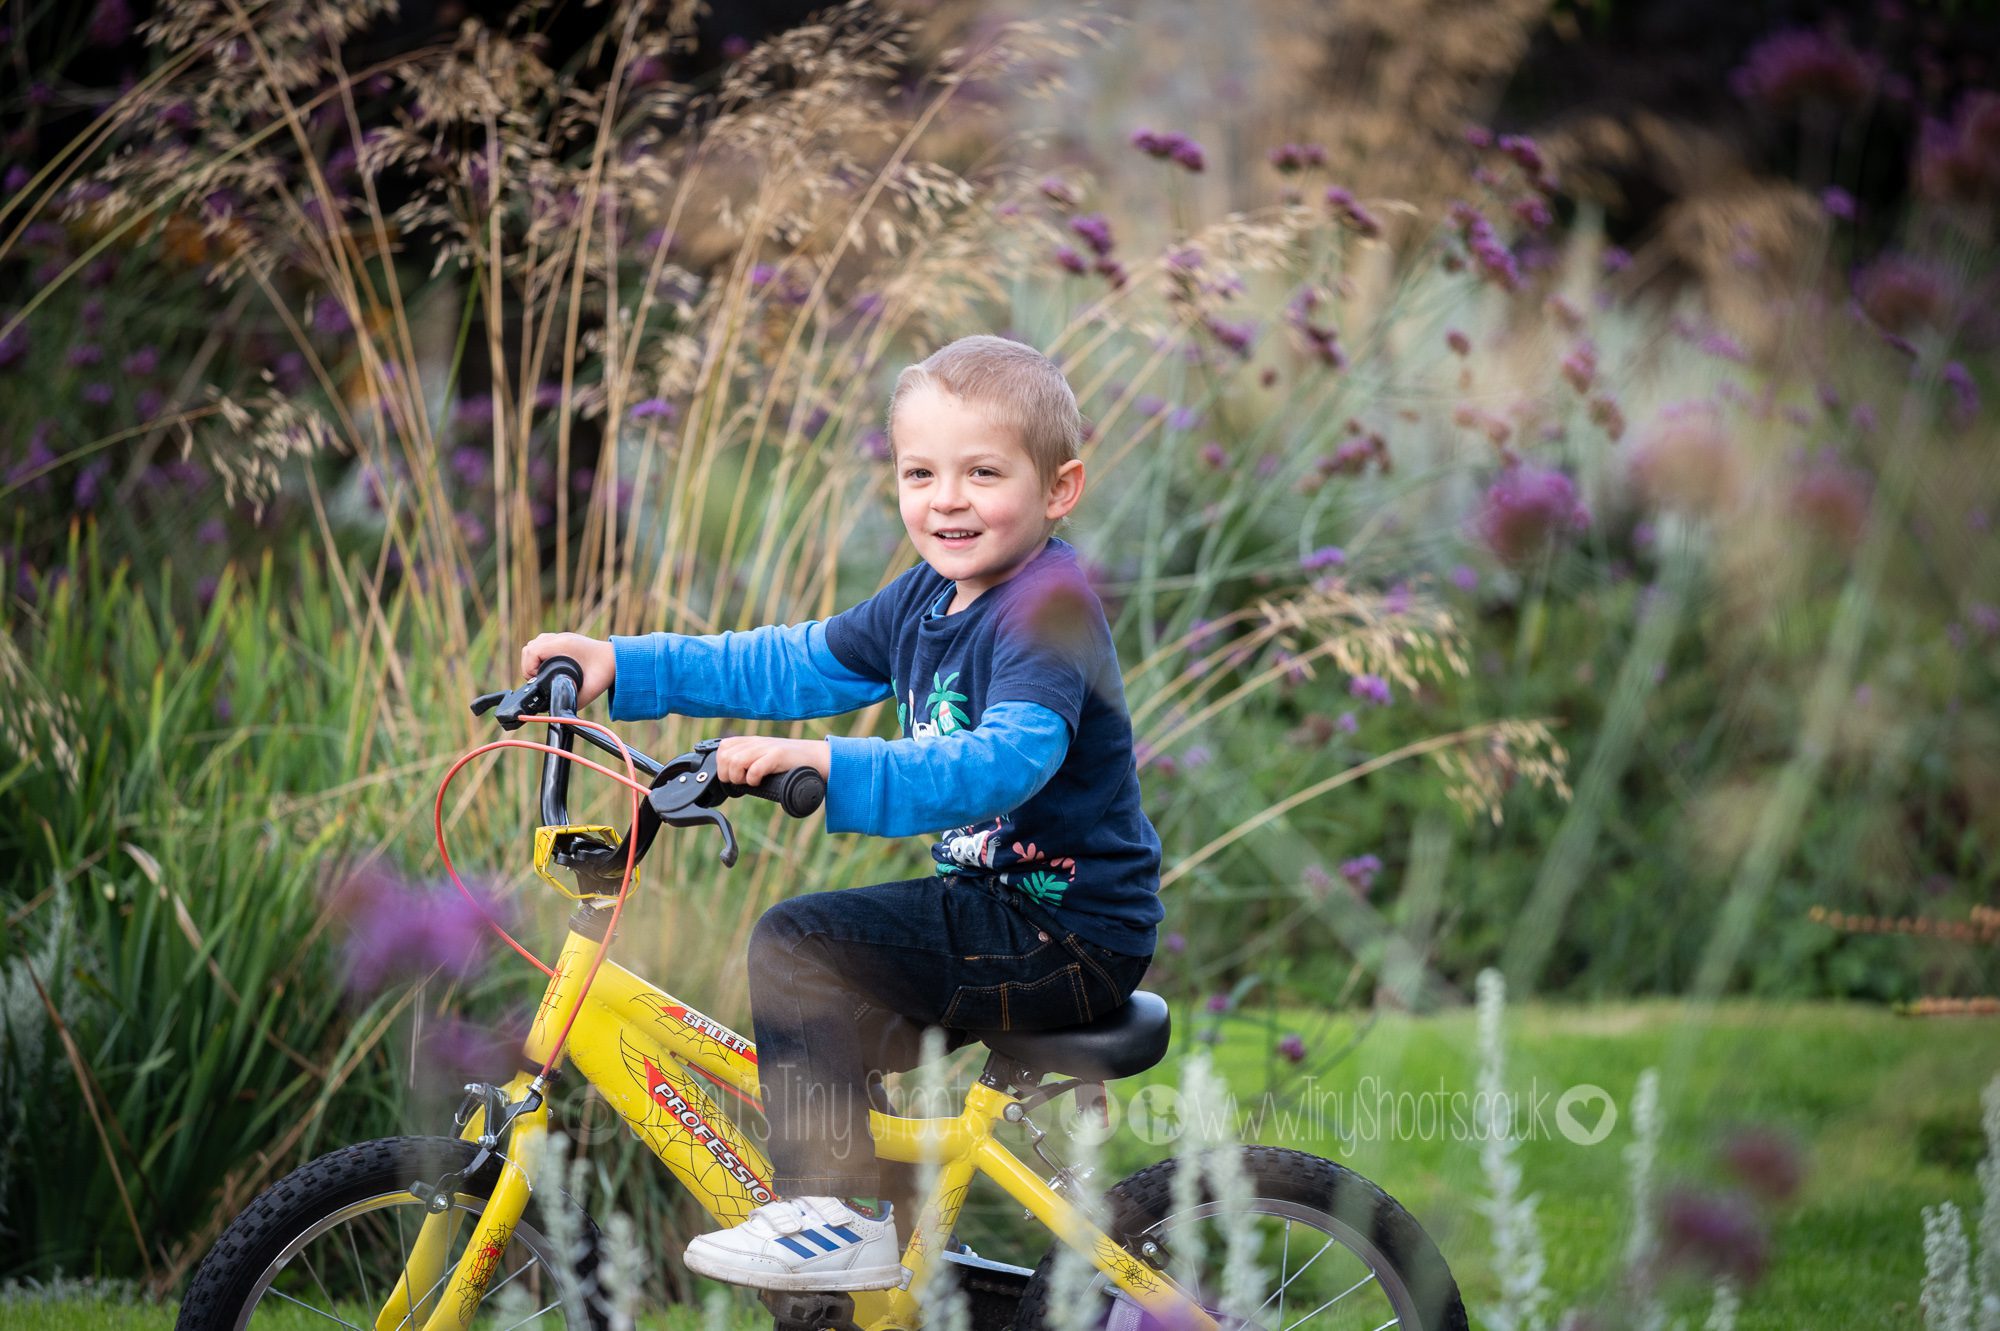 Boy on a bike in garden